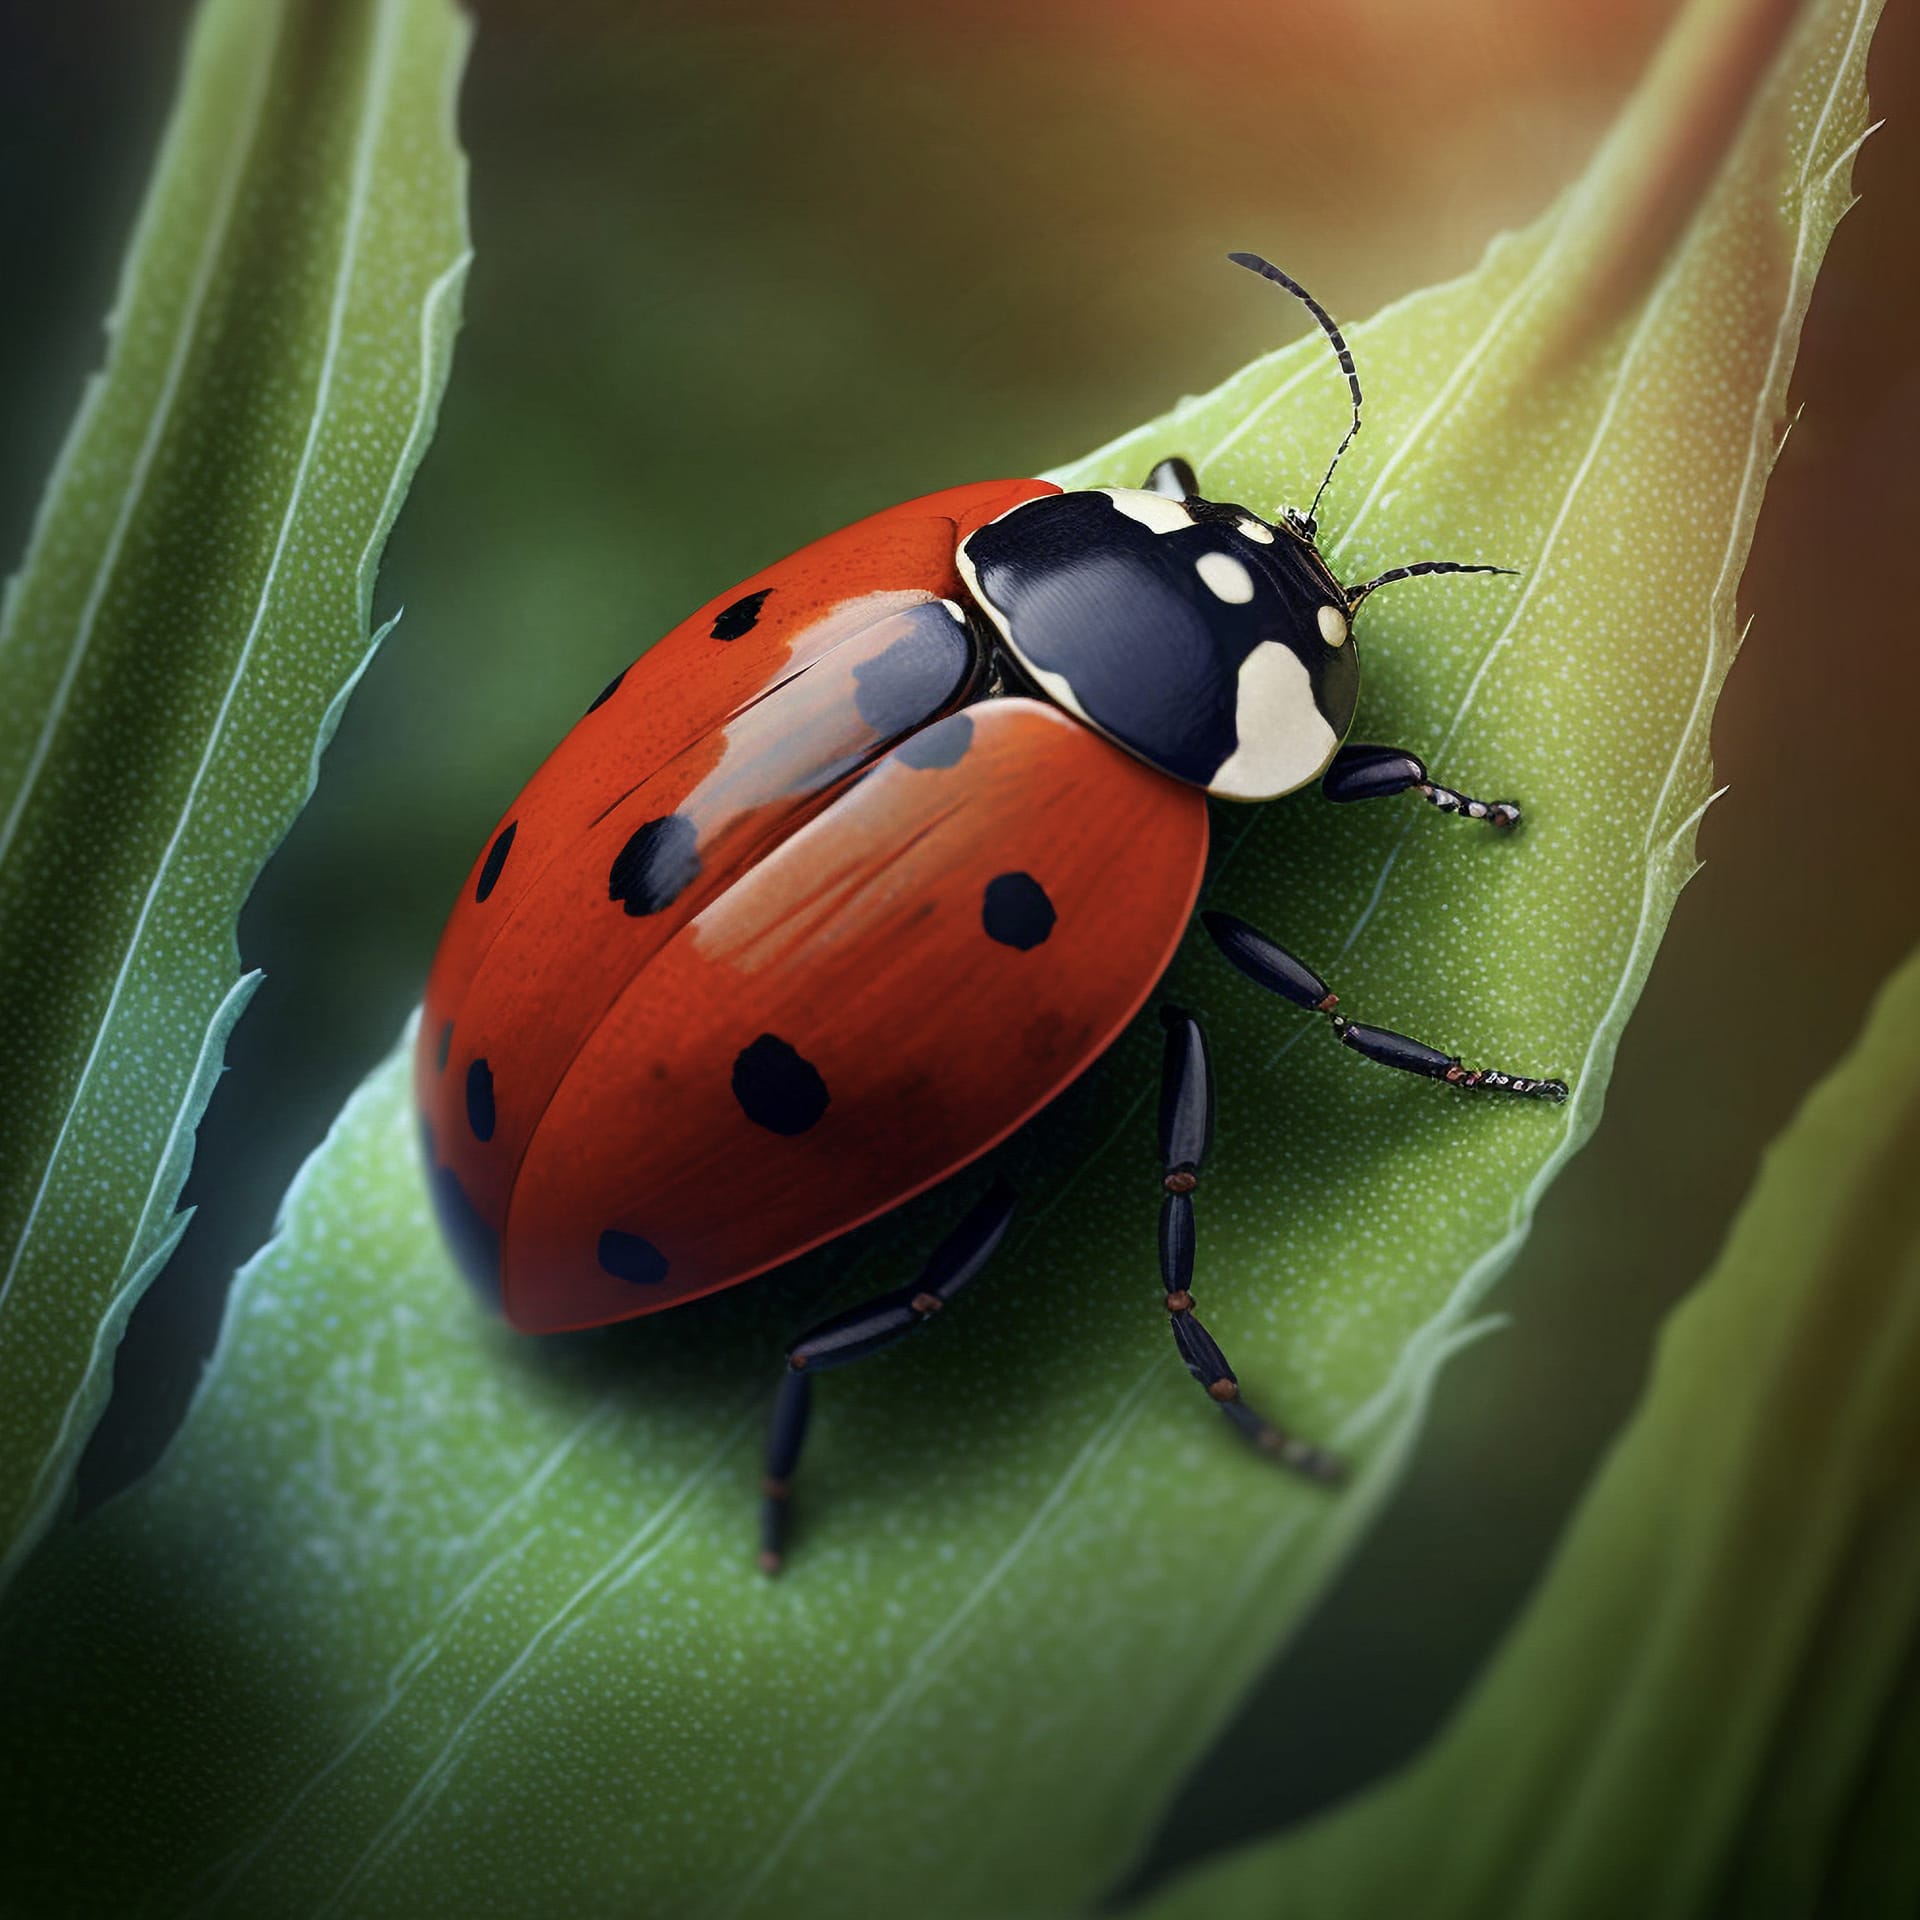 Ladybug crawling celery leave image animal image